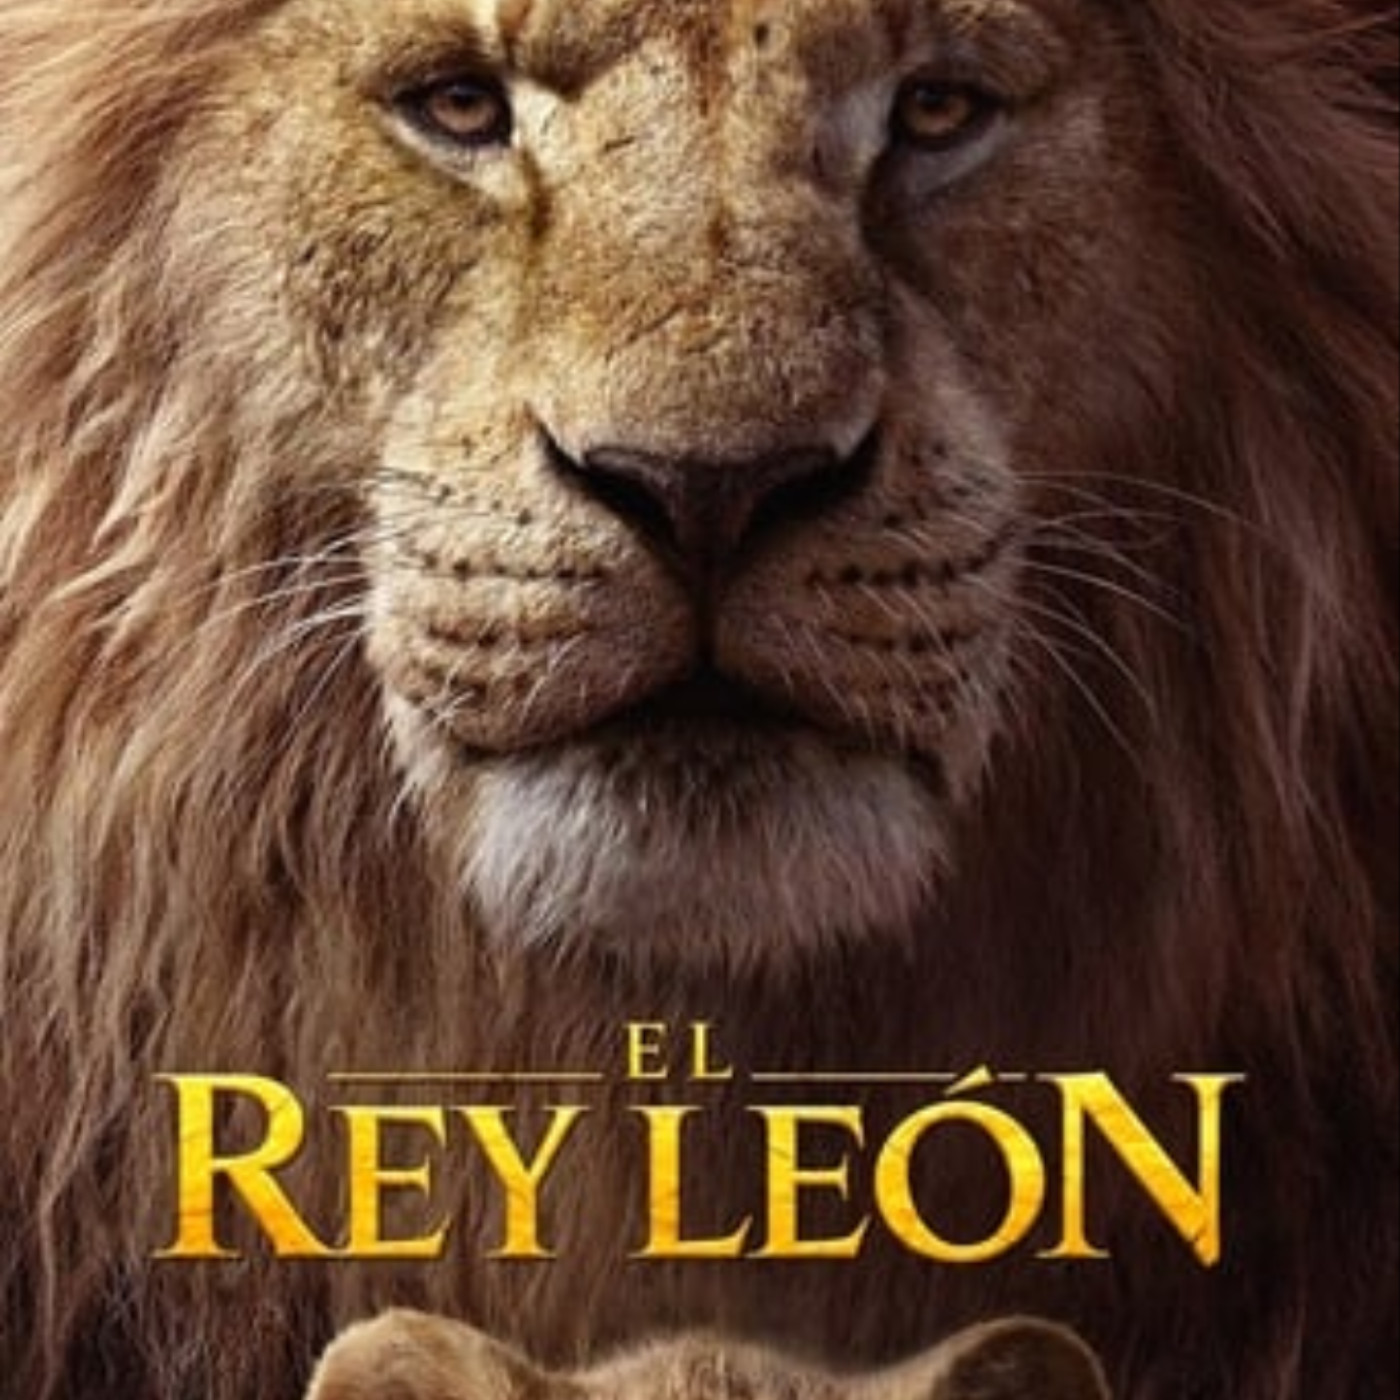 Arriba 54+ imagen gnula rey leon